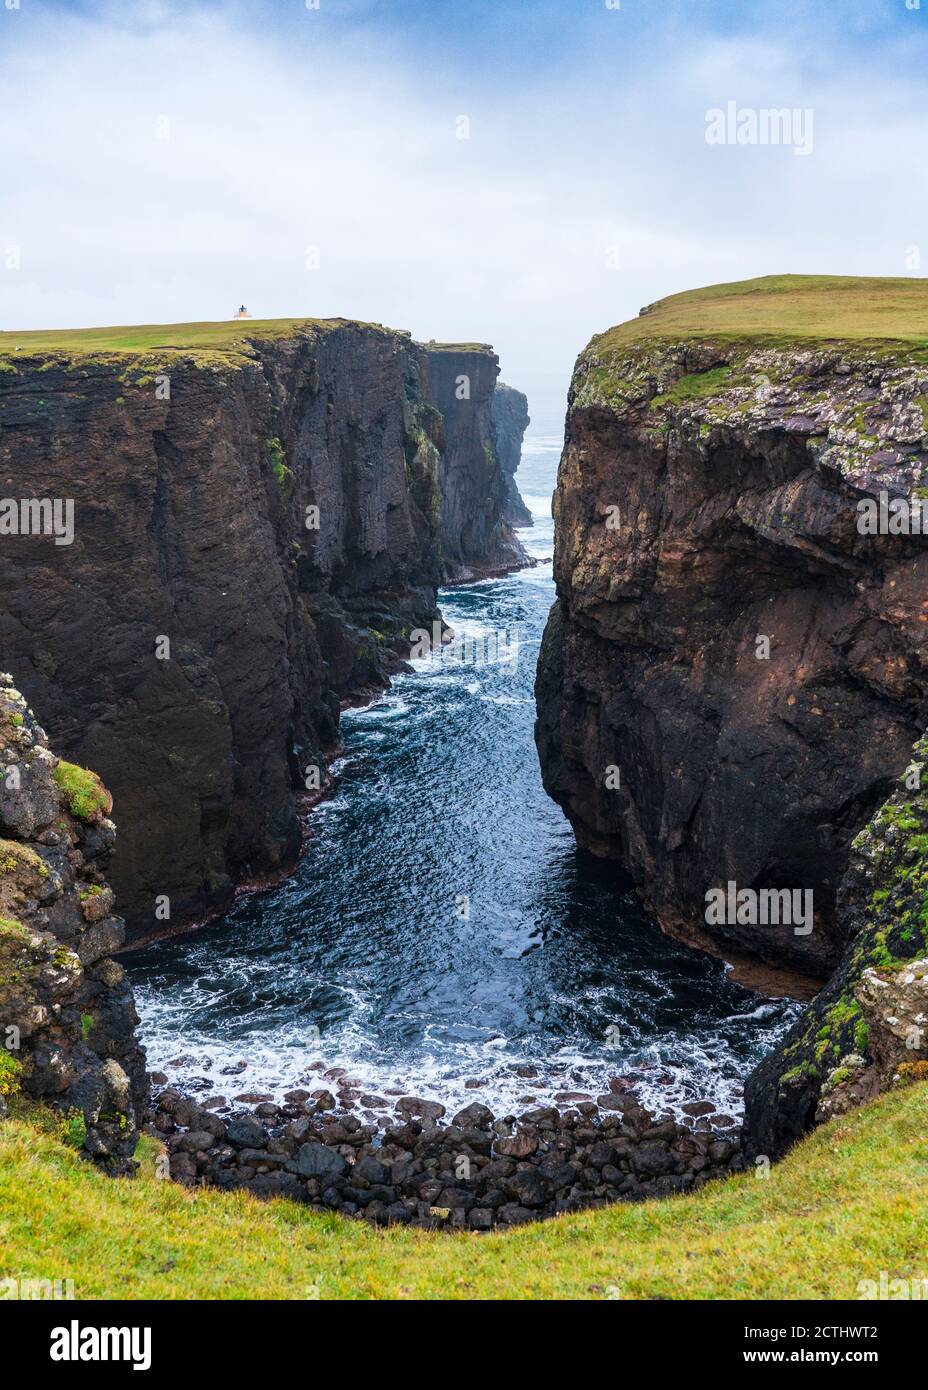 Falaises spectaculaires à Calder's Geo sur la côte à Eshaness à Northmavine , partie continentale nord des îles Shetland, Écosse, Royaume-Uni Banque D'Images